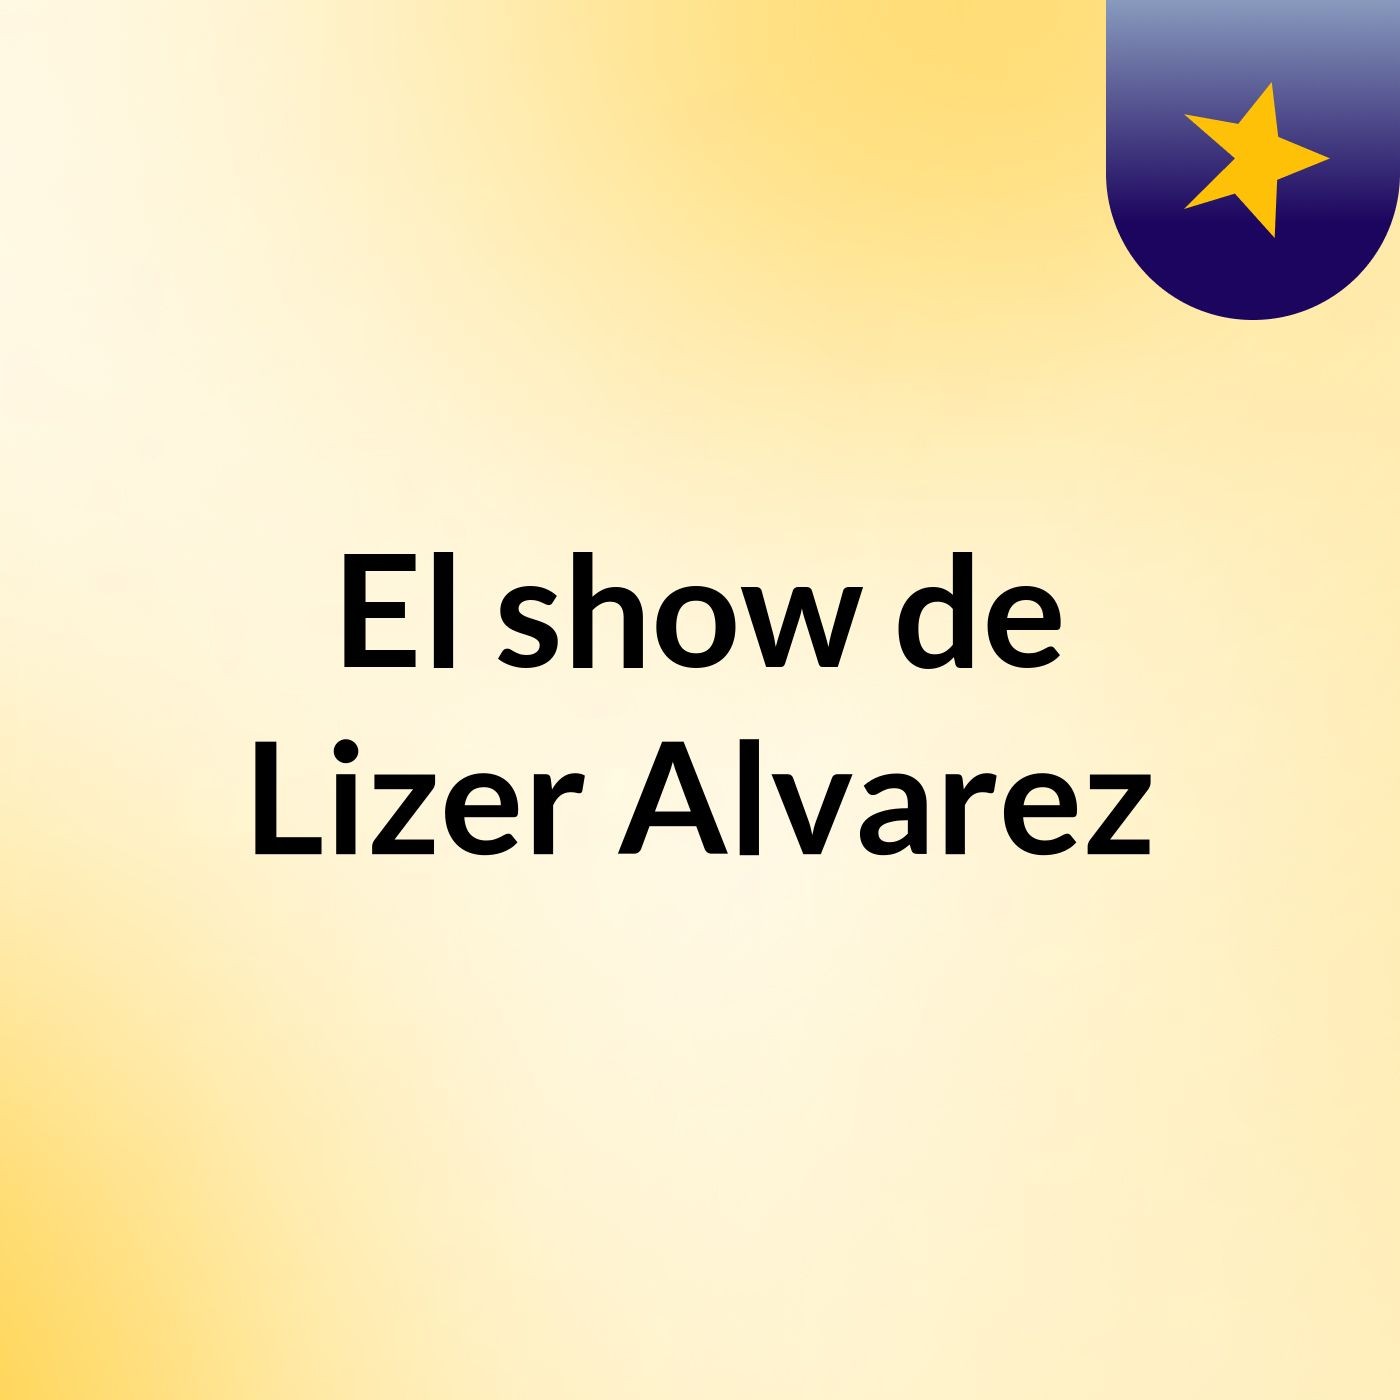 El show de Lizer Alvarez